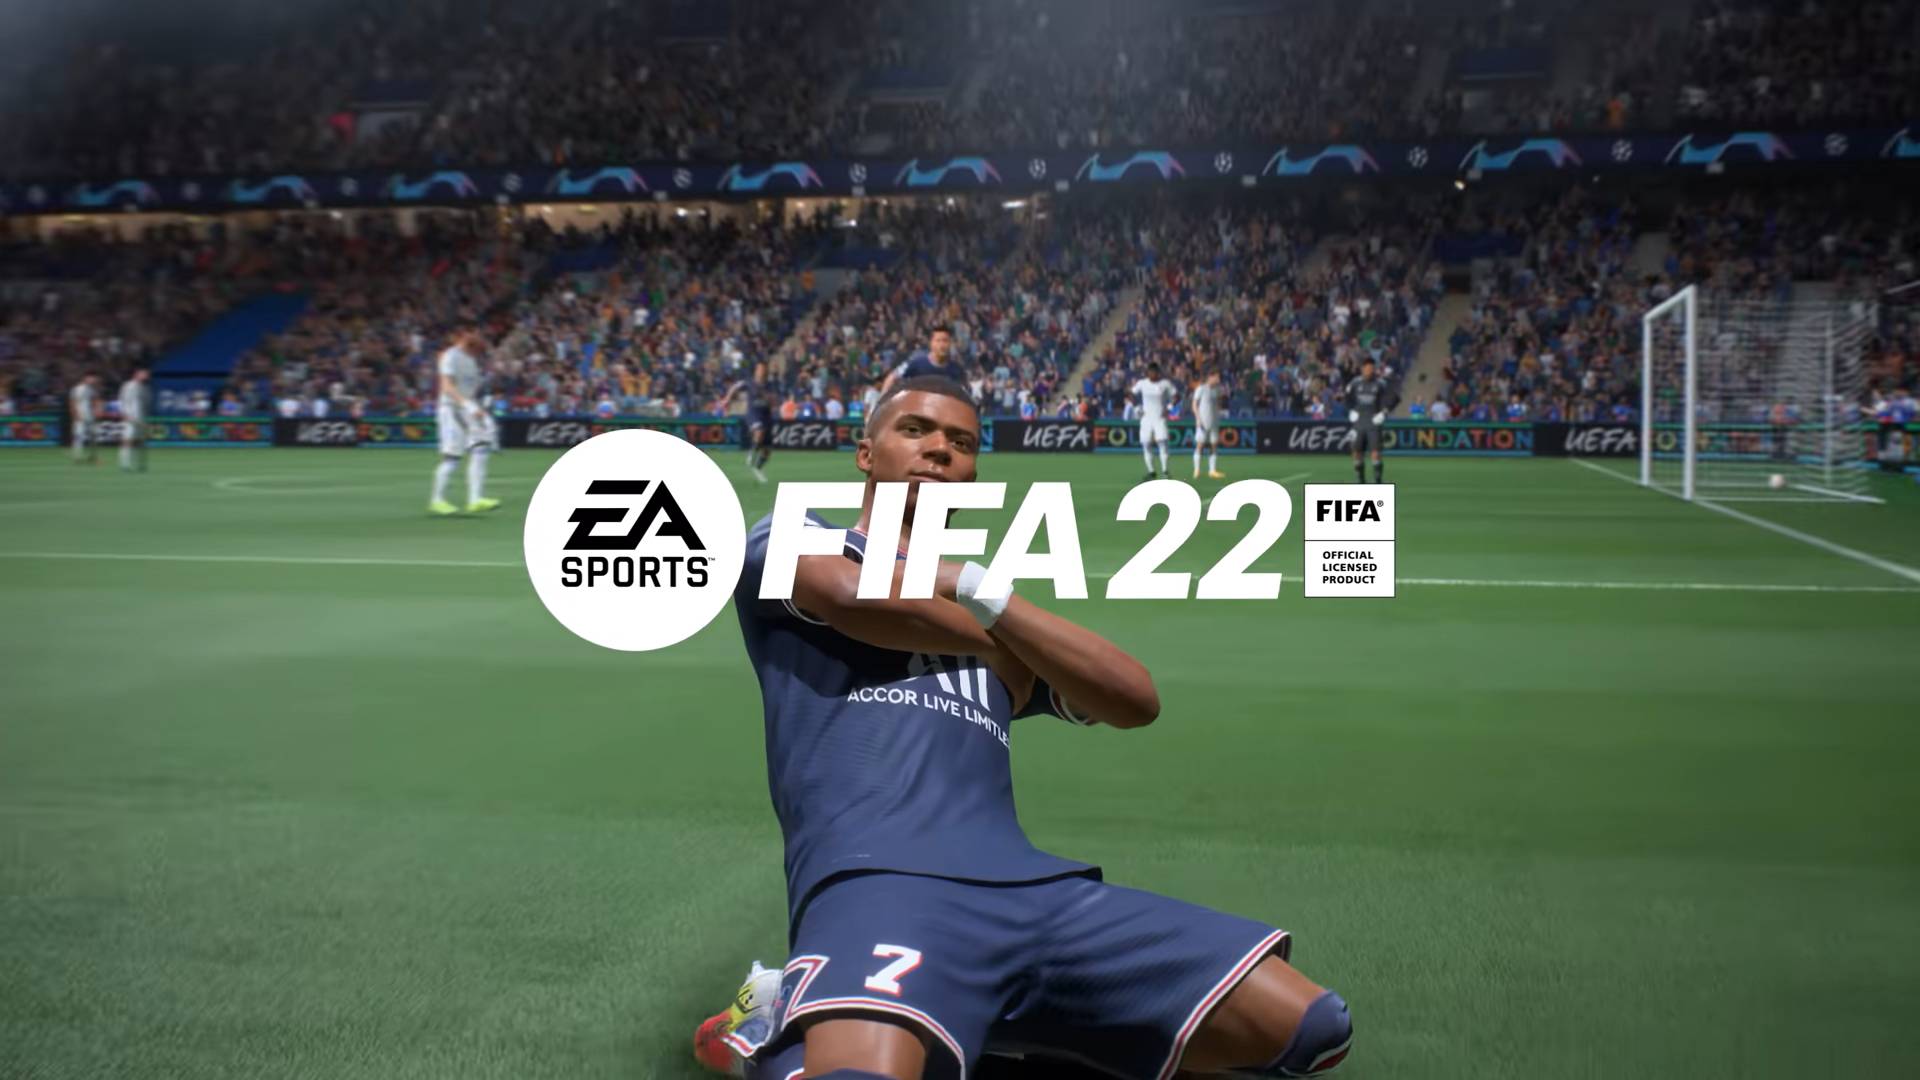 FIFA 22 - kiedy premiera i trailer? Sprawdź wszystko, co już wiemy | Geex